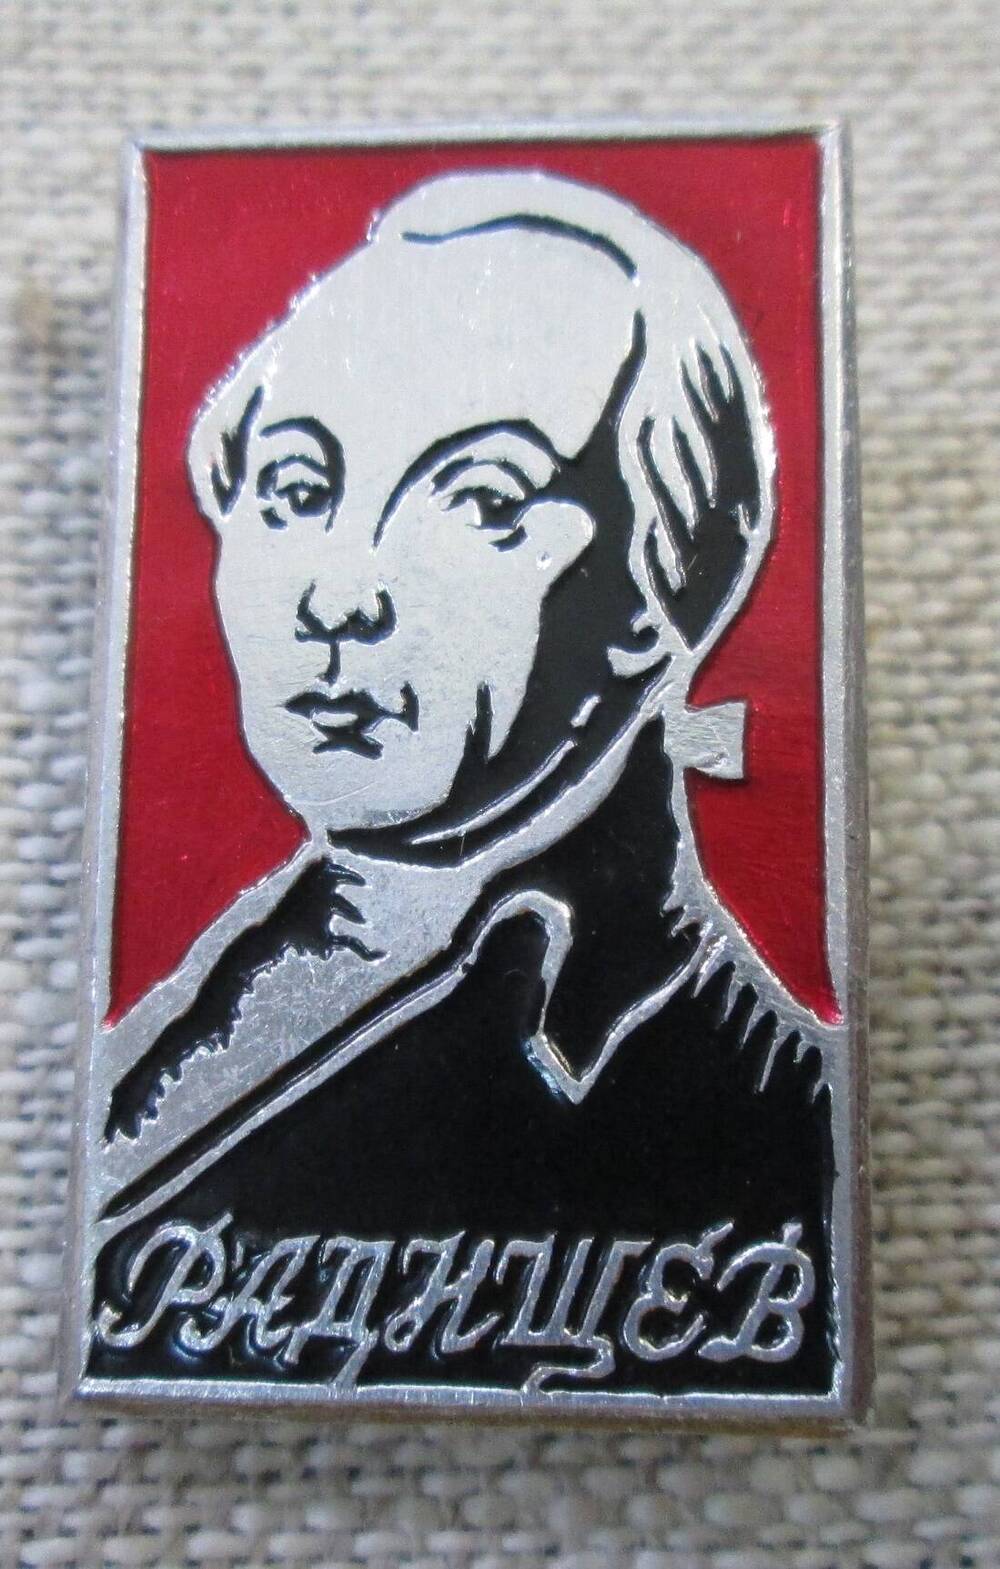 Значок Радищев, 1970-е гг.